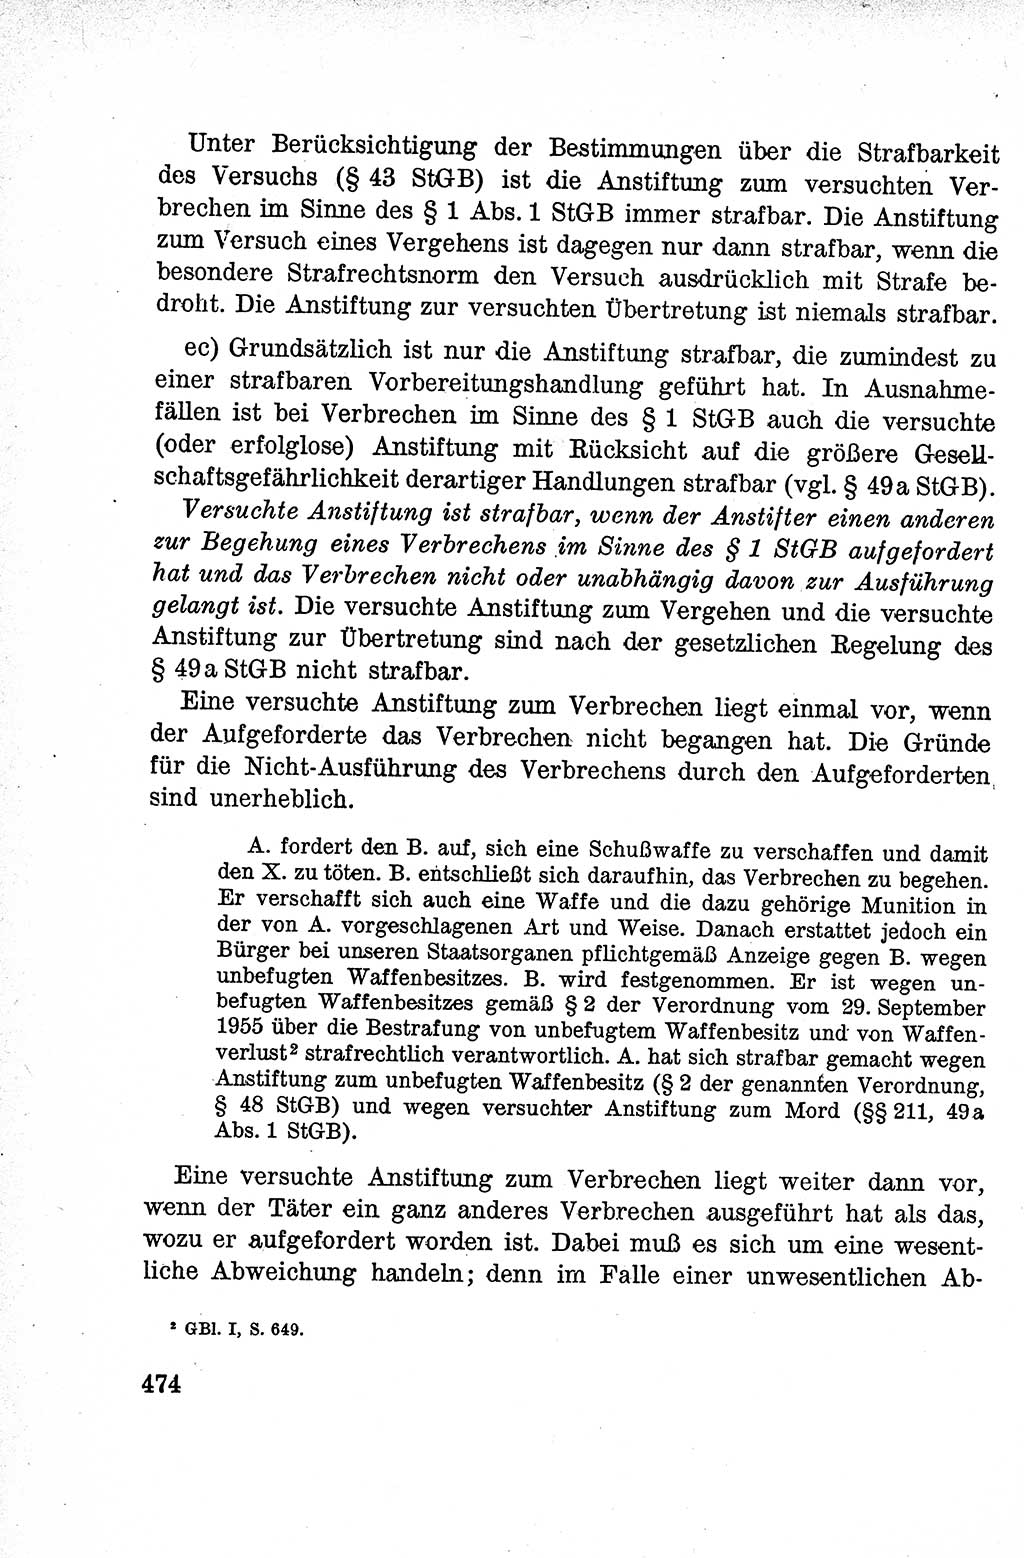 Lehrbuch des Strafrechts der Deutschen Demokratischen Republik (DDR), Allgemeiner Teil 1959, Seite 474 (Lb. Strafr. DDR AT 1959, S. 474)